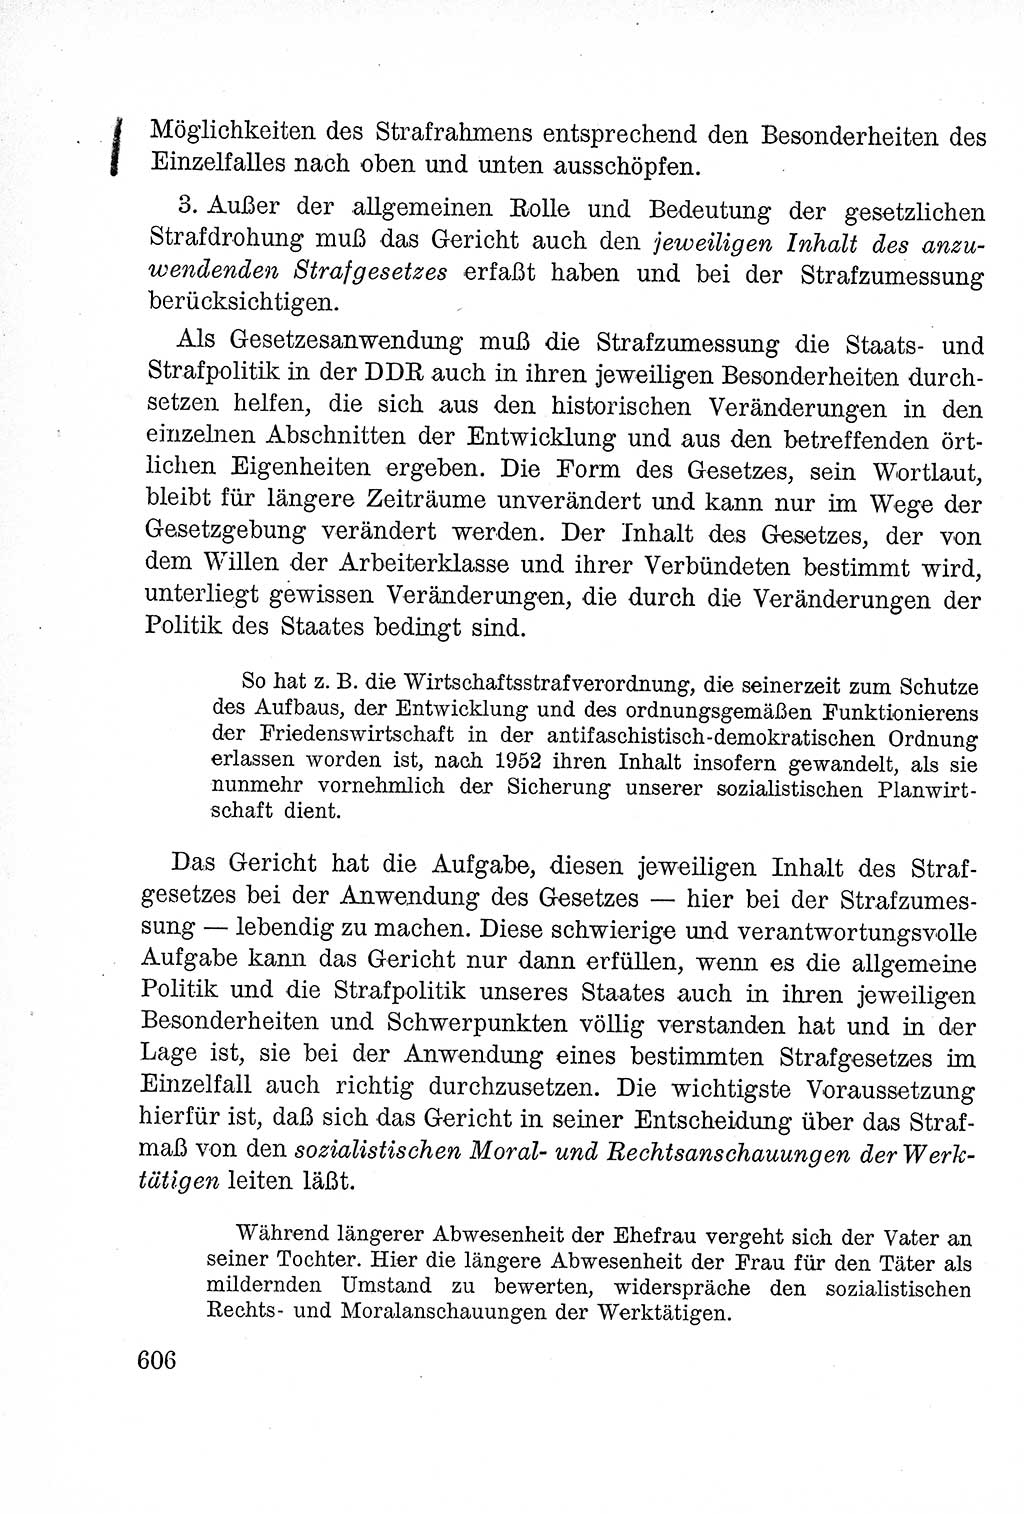 Lehrbuch des Strafrechts der Deutschen Demokratischen Republik (DDR), Allgemeiner Teil 1957, Seite 606 (Lb. Strafr. DDR AT 1957, S. 606)